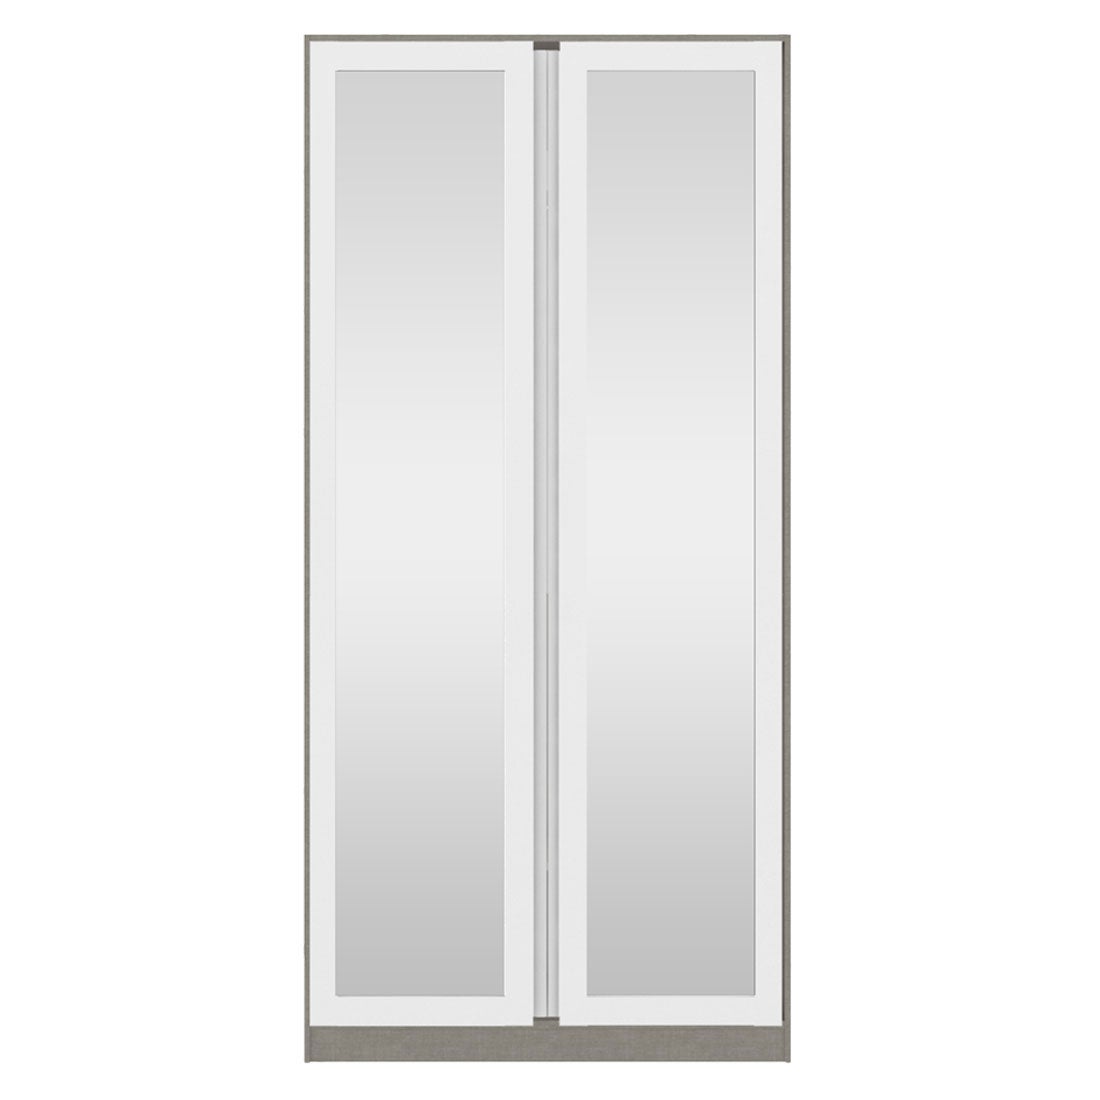 ตู้เสื้อผ้า ชั้นเก็บของ OP-C ขนาด 100 ซม. รุ่น Blox สีขาว&กระจกเงา1